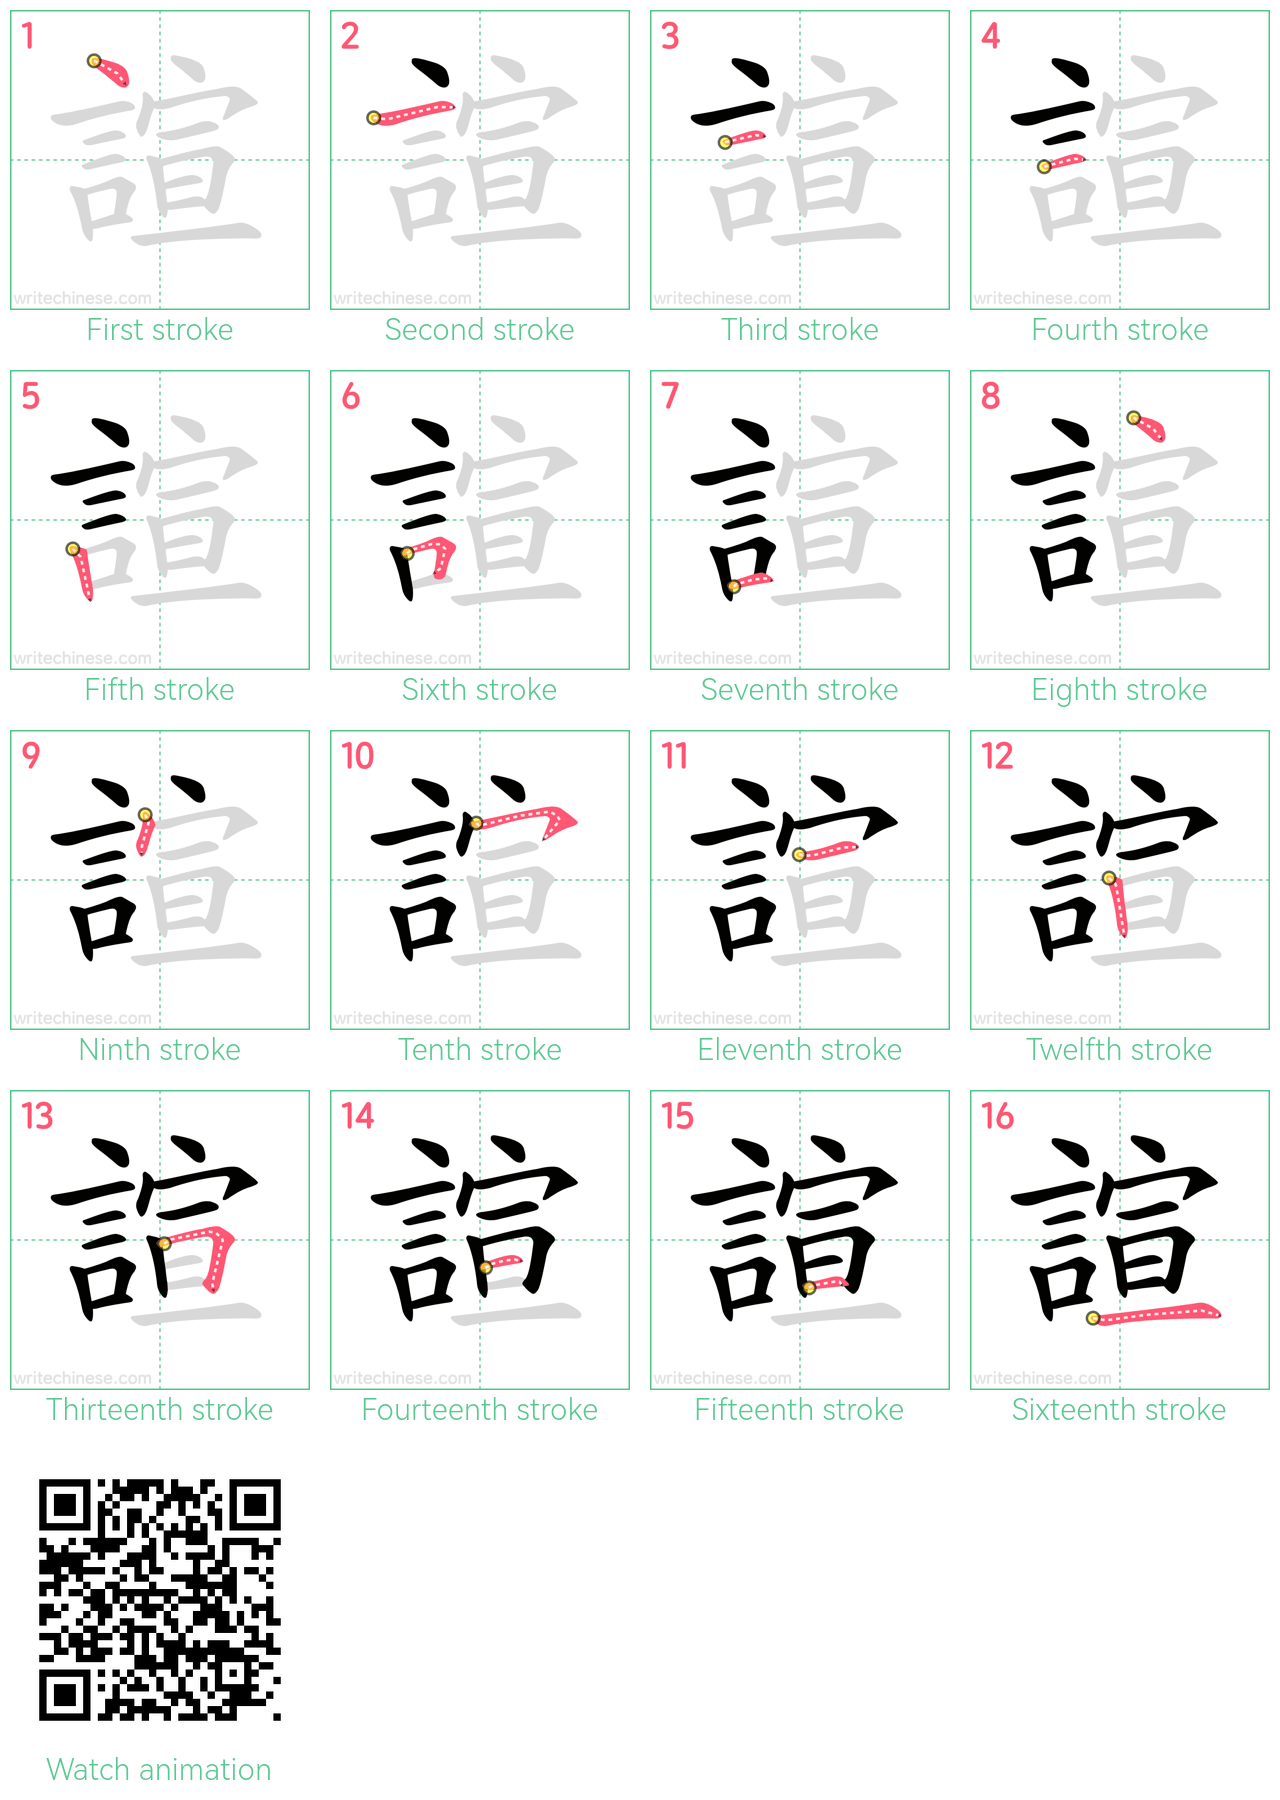 諠 step-by-step stroke order diagrams